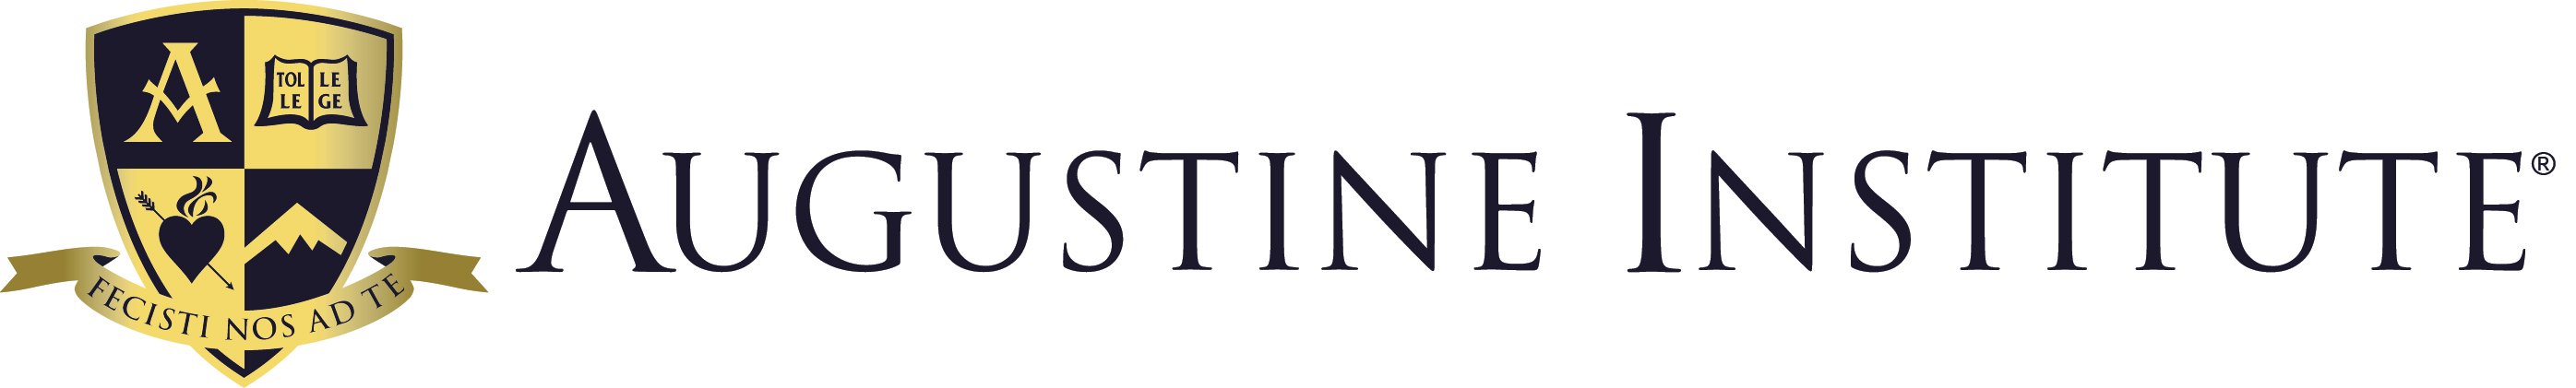 Augustine Institute logo